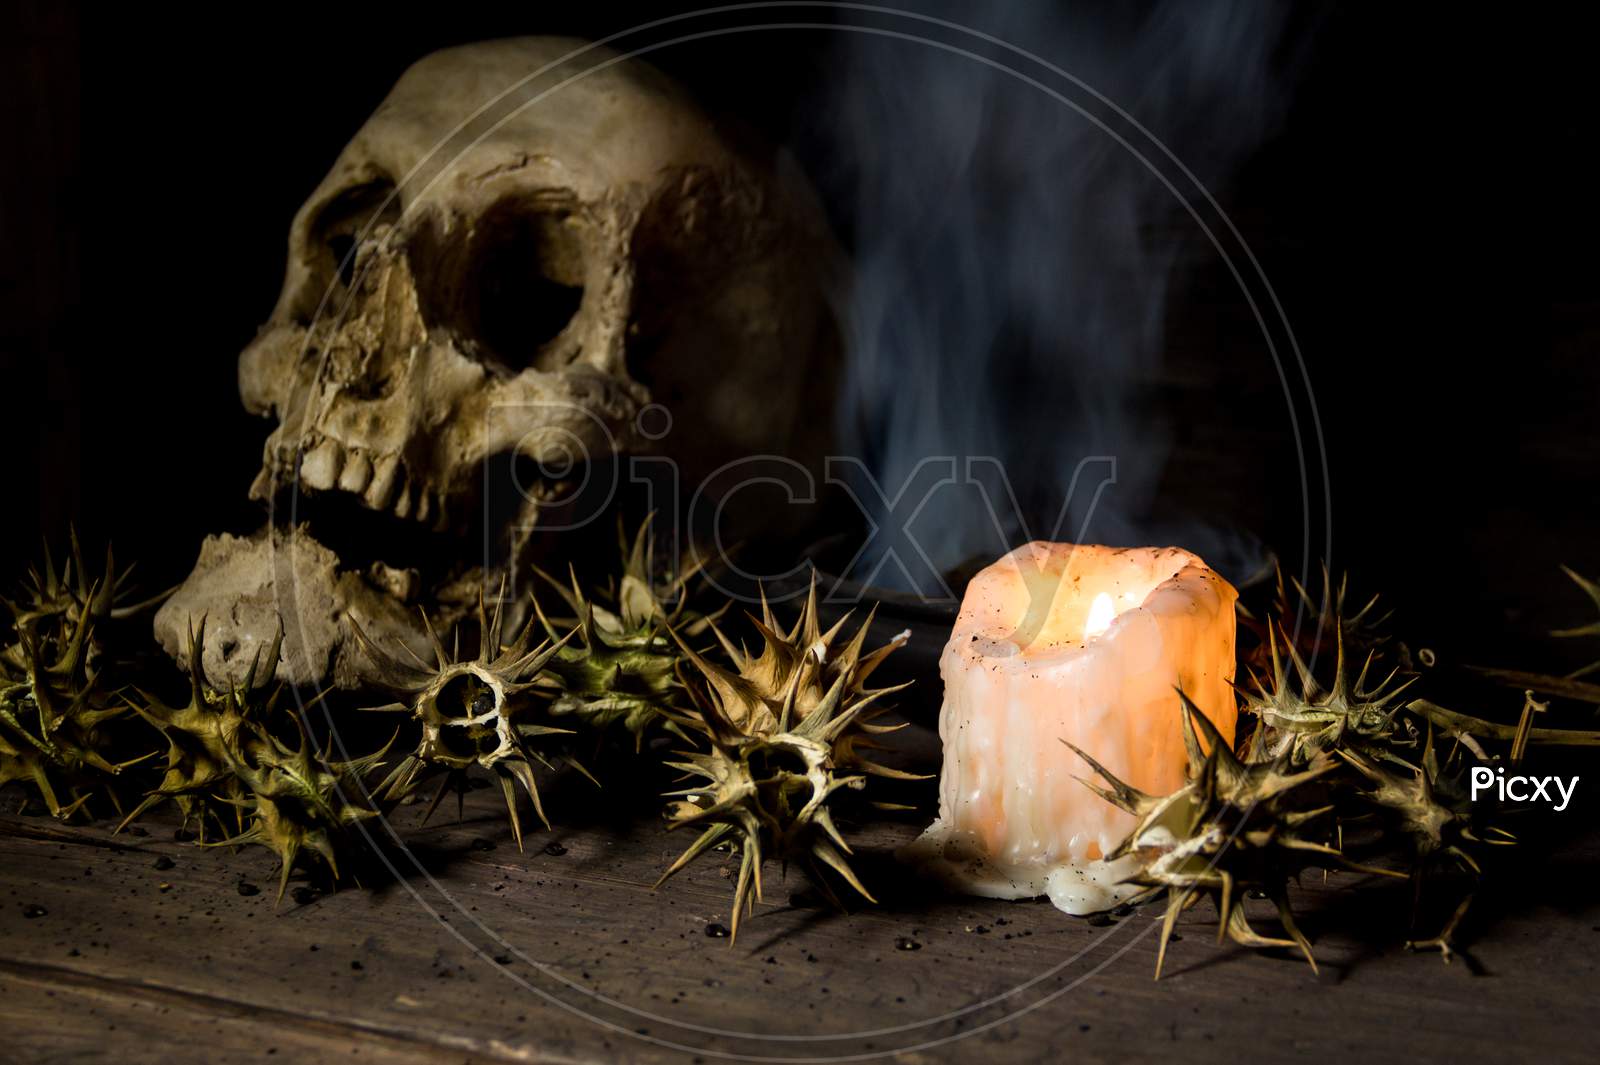 Burundanga Fruits And Seeds With A Human Skull Fire And Smoke